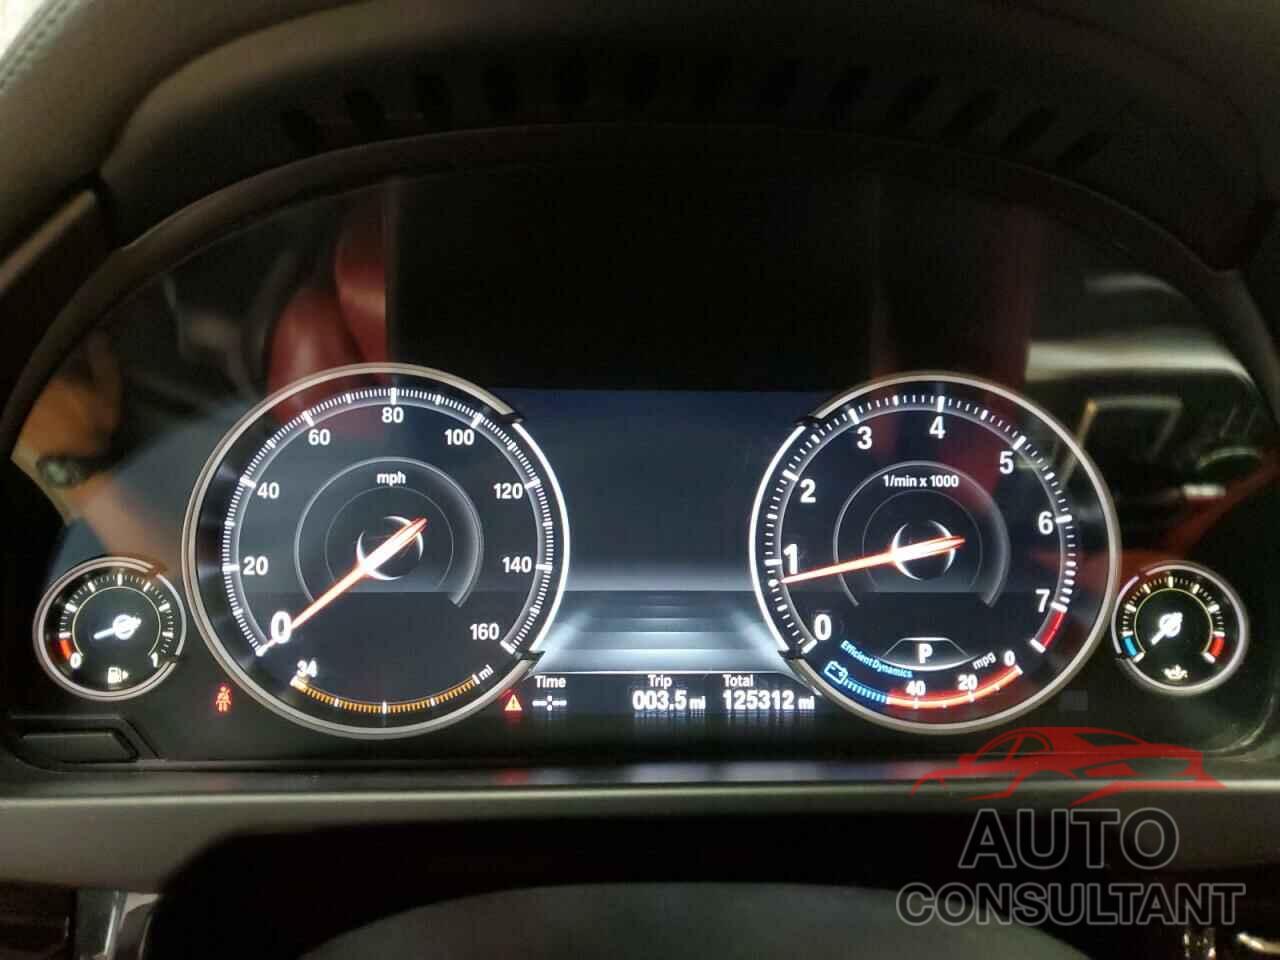 BMW X6 2018 - 5UXKU0C5XJ0G81131